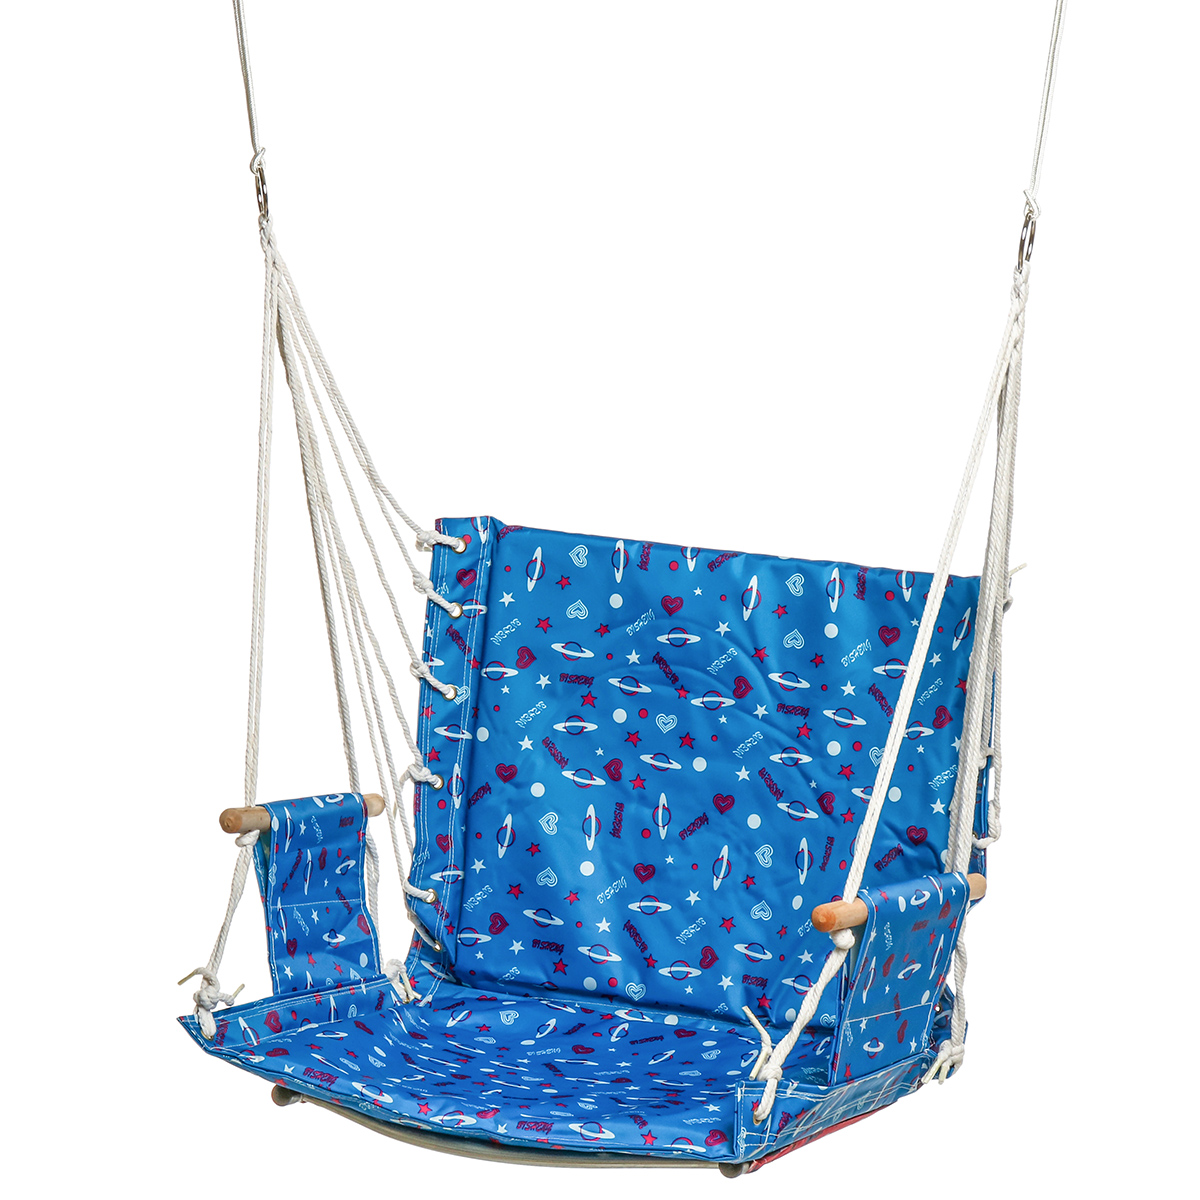 Outdoor-Hanging-Chair-Swinging-Hammock-Thicken-Rope-Swing-Seat-For-Home-Indoor-Outdoor-Backyard-Gard-1706887-9